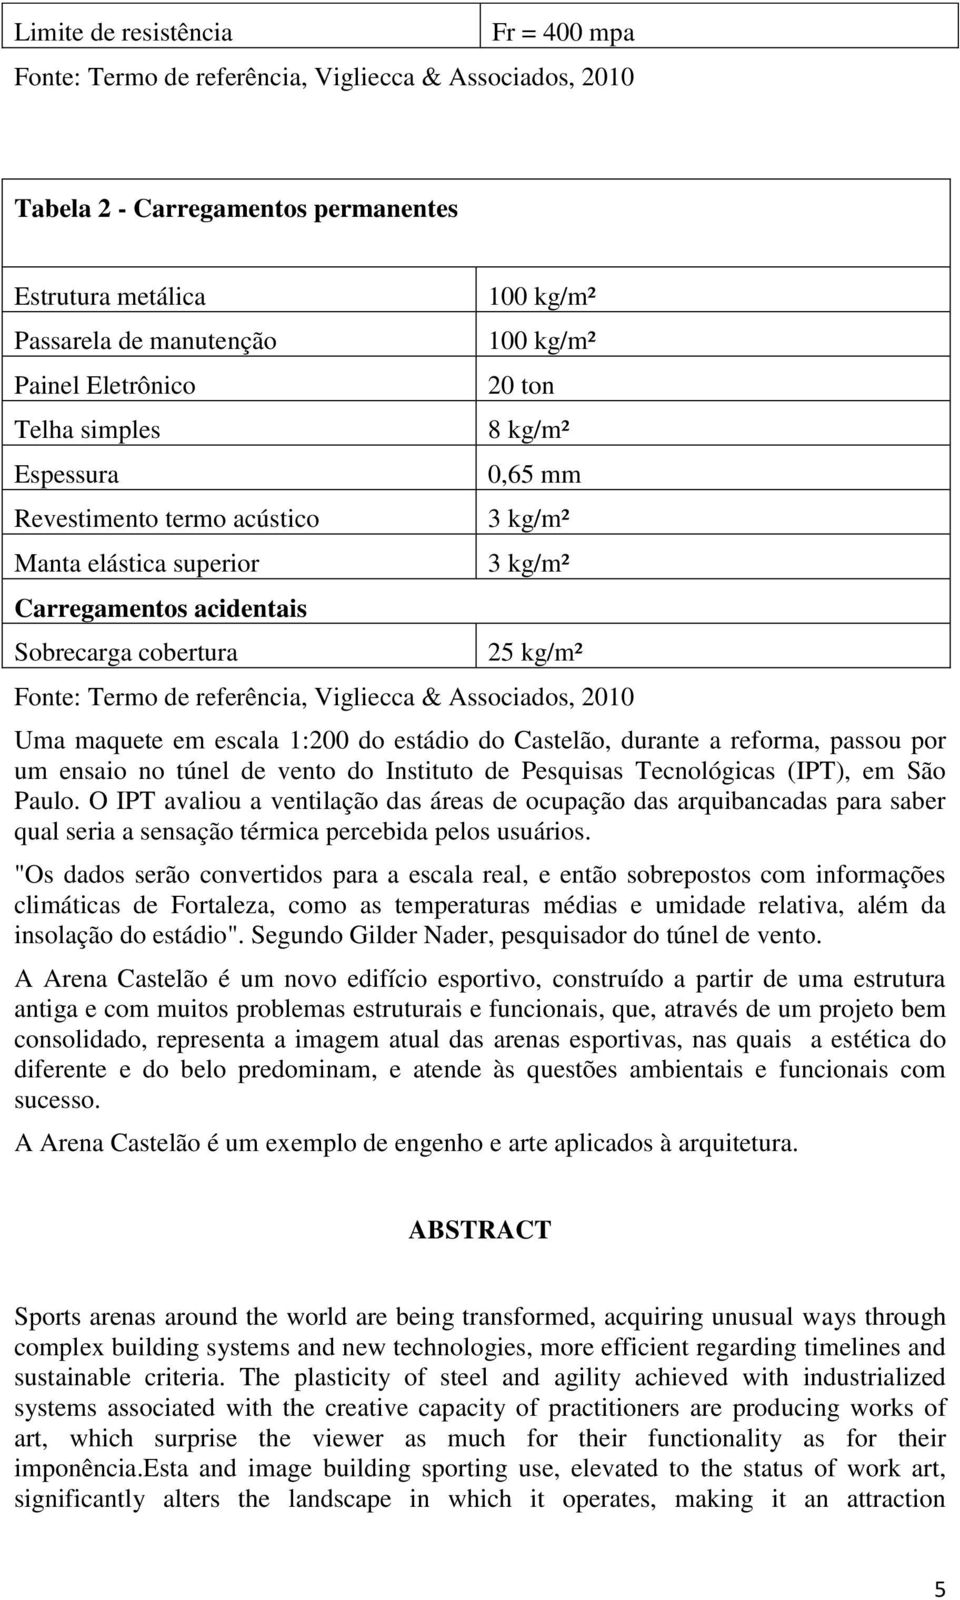 referência, Vigliecca & Associados, 2010 Uma maquete em escala 1:200 do estádio do Castelão, durante a reforma, passou por um ensaio no túnel de vento do Instituto de Pesquisas Tecnológicas (IPT), em